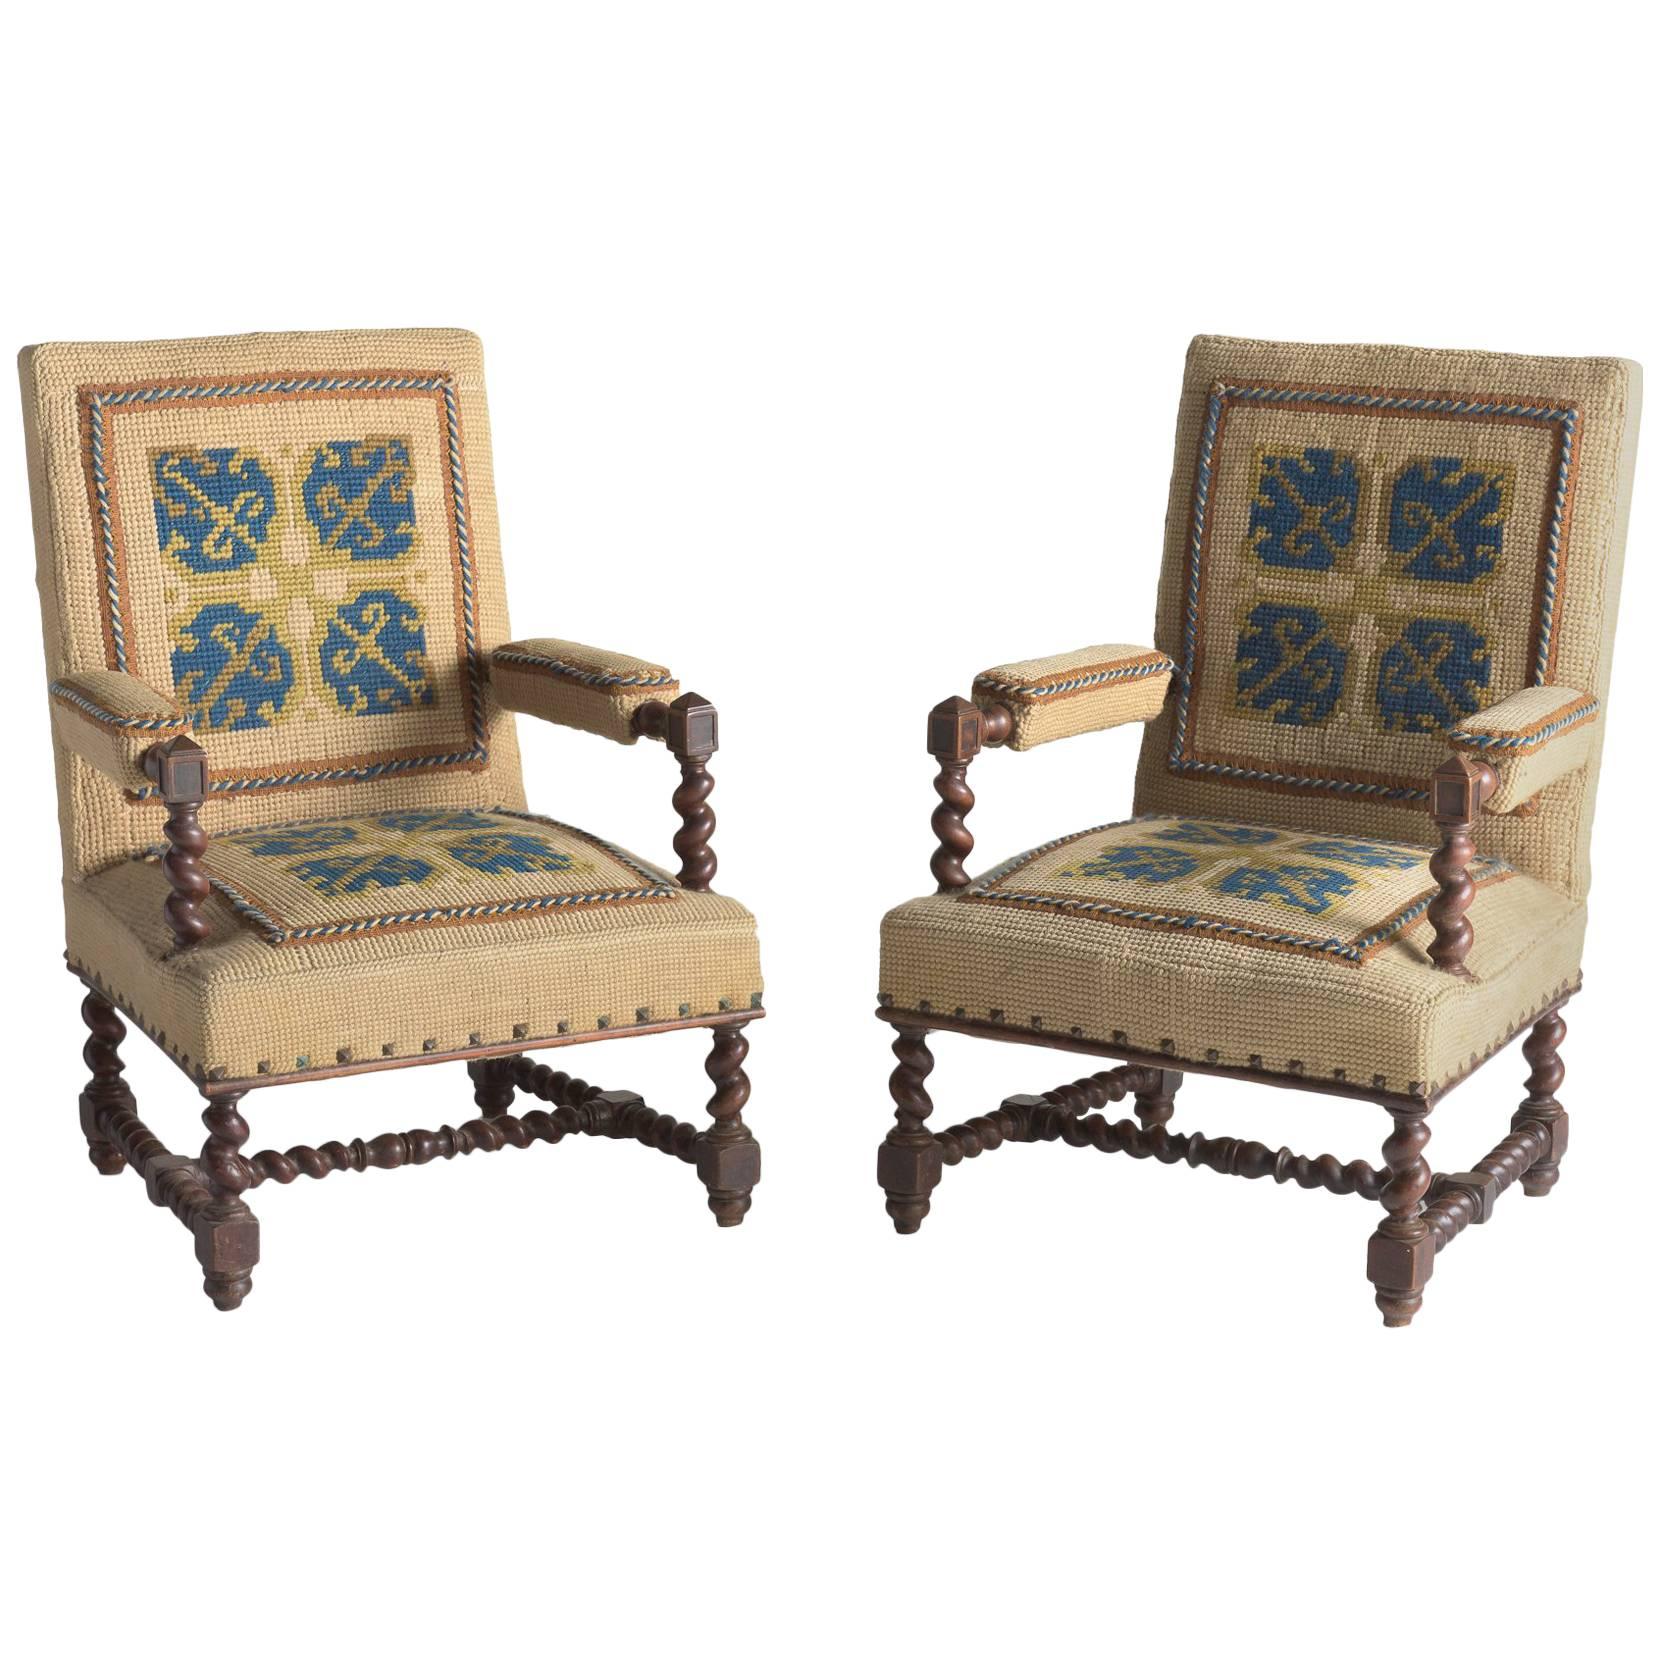 Carpet Chairs, France, circa 1890